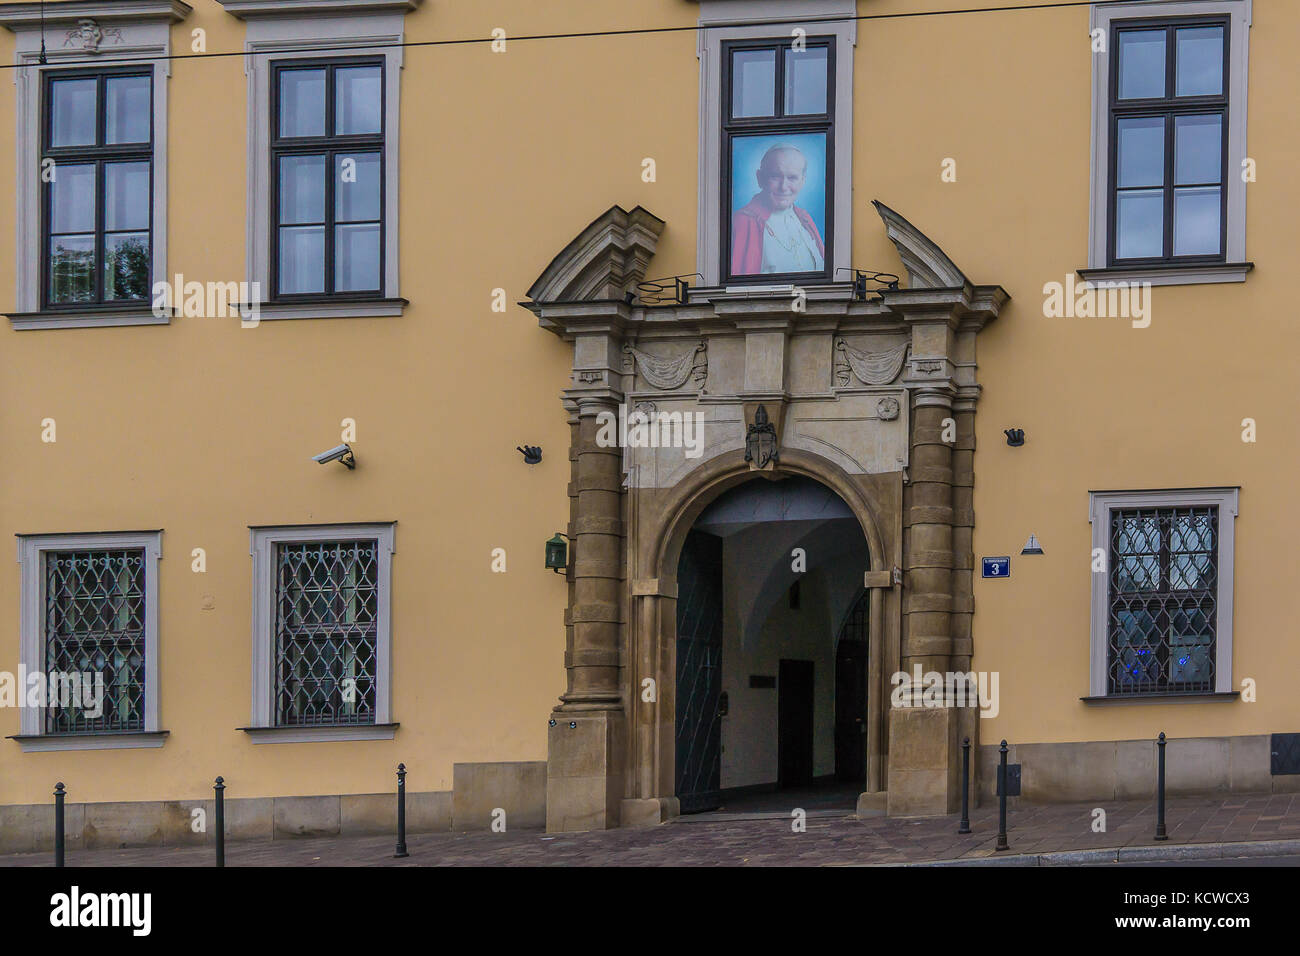 La casa whwre donde juan pablo ii vivió como un joven sacerdote, ahora un museo, Cracovia, Polonia, 15 de septiembre de 2017 Foto de stock